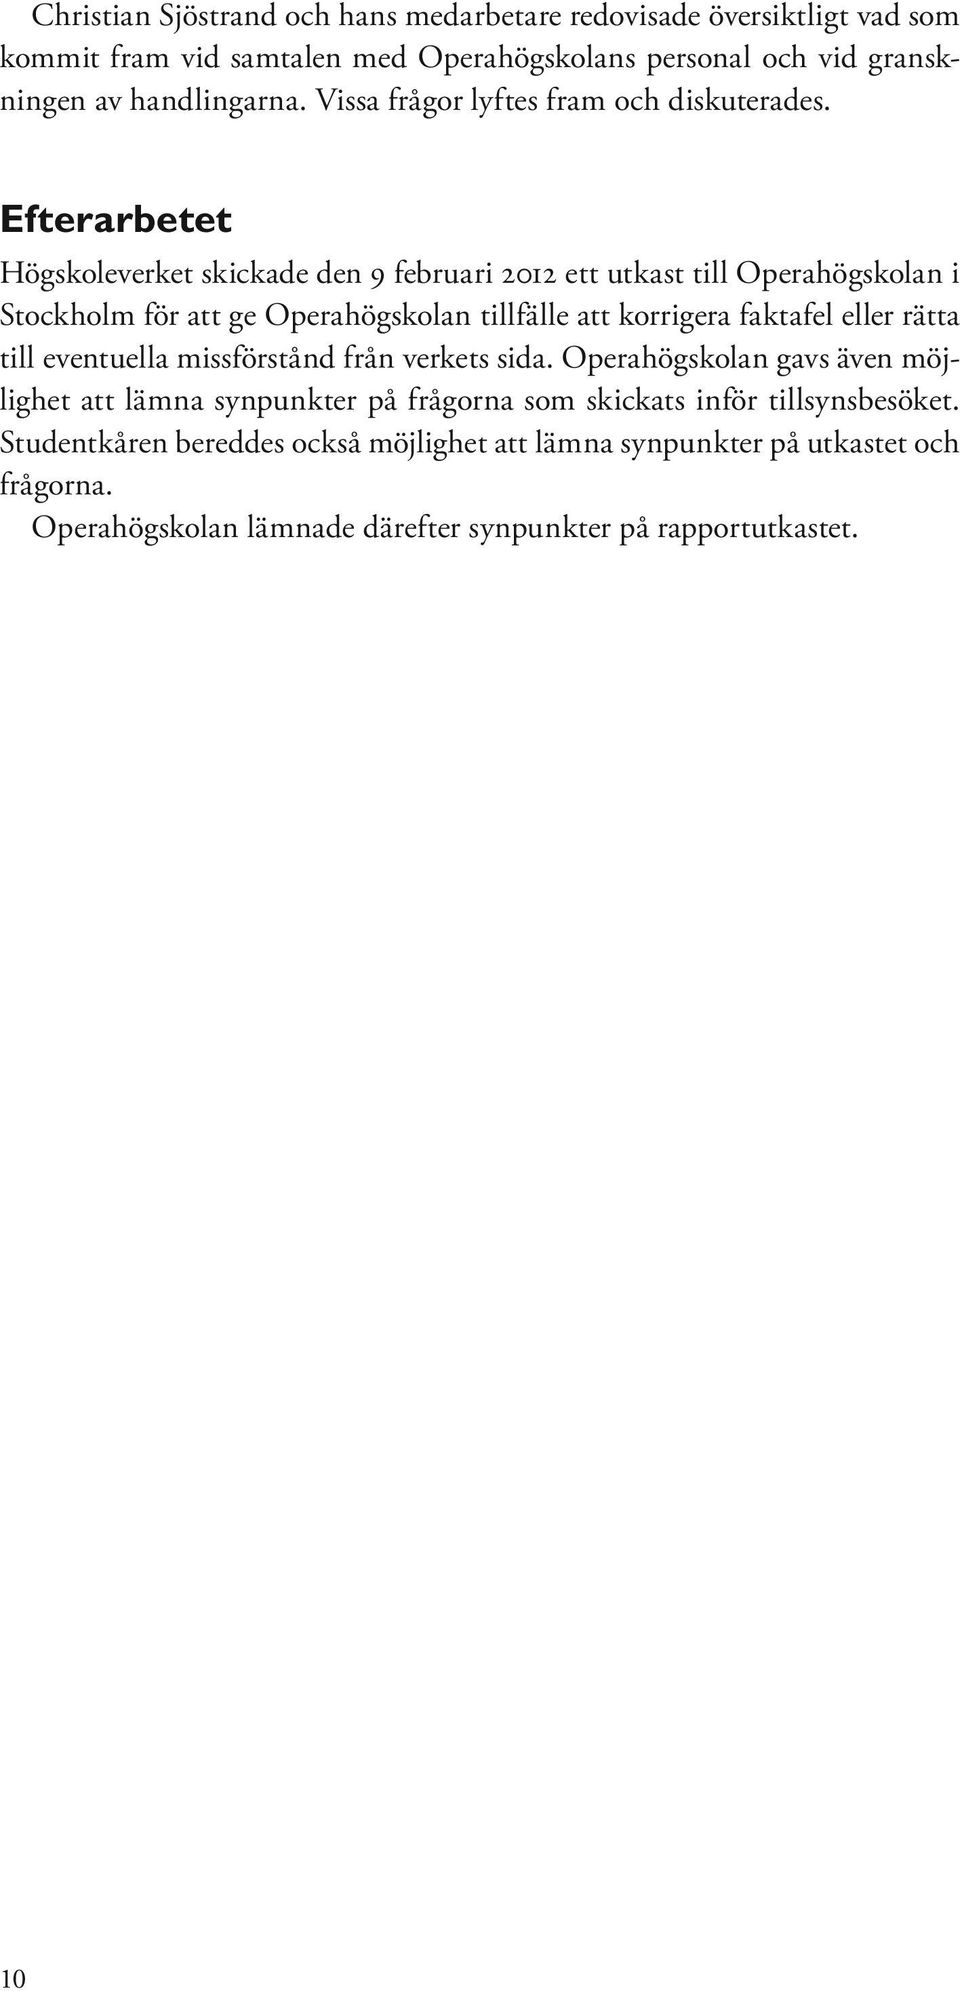 Efterarbetet Högskoleverket skickade den 9 februari 2012 ett utkast till Operahögskolan i Stockholm för att ge Operahögskolan tillfälle att korrigera faktafel eller rätta